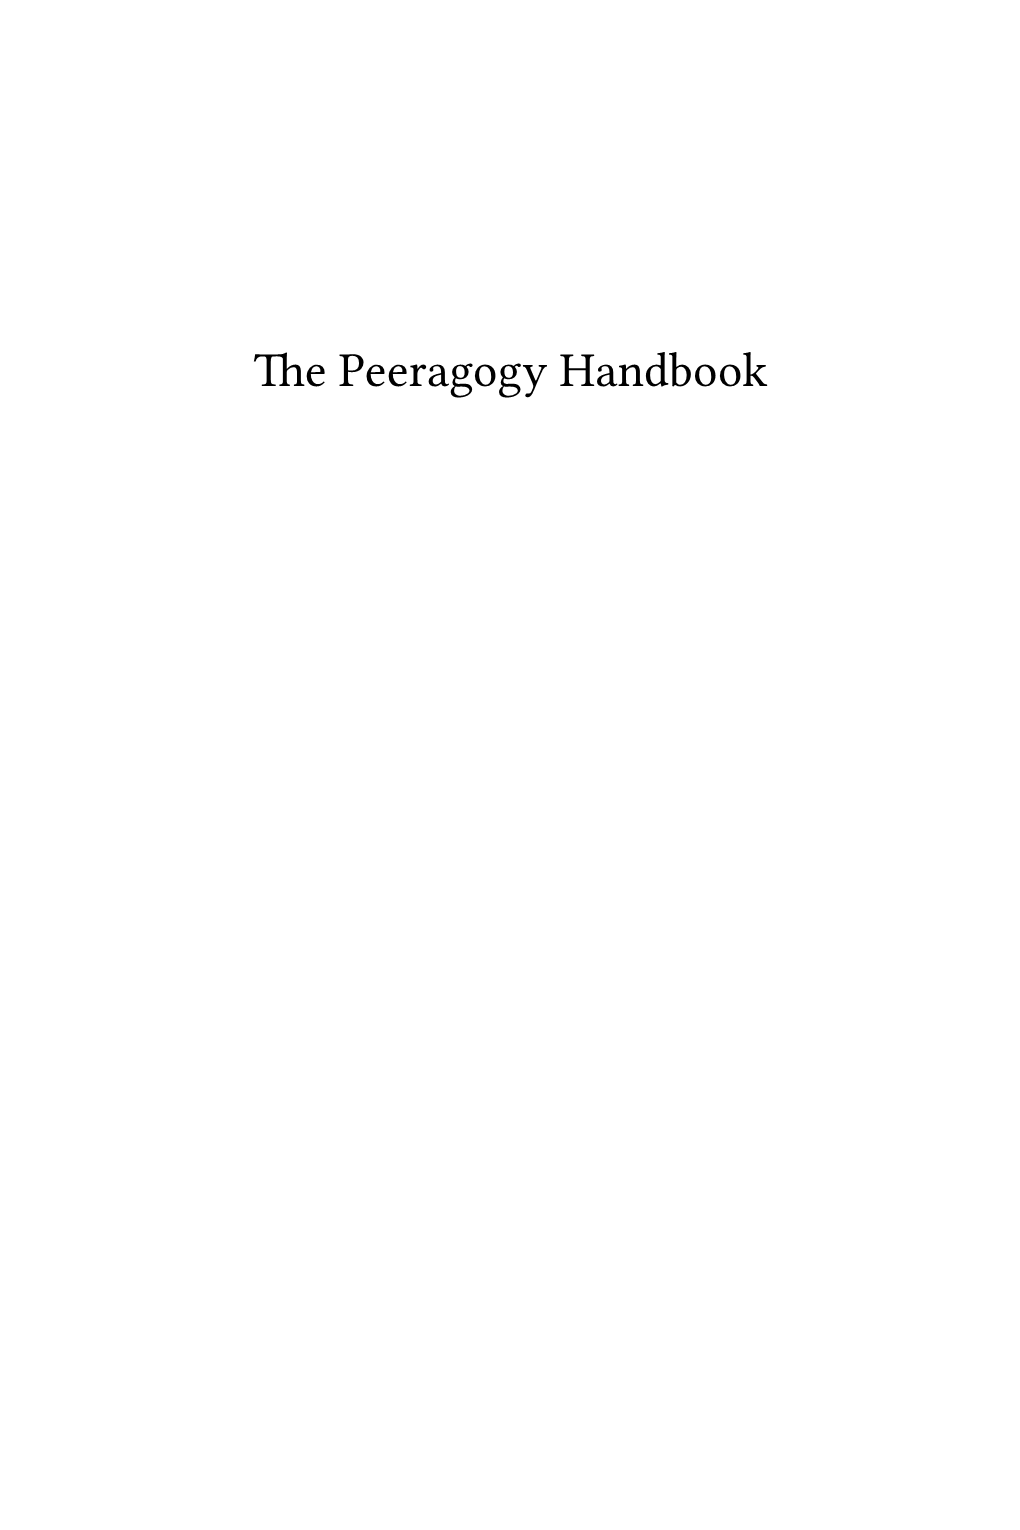 The Peeragogy Handbook